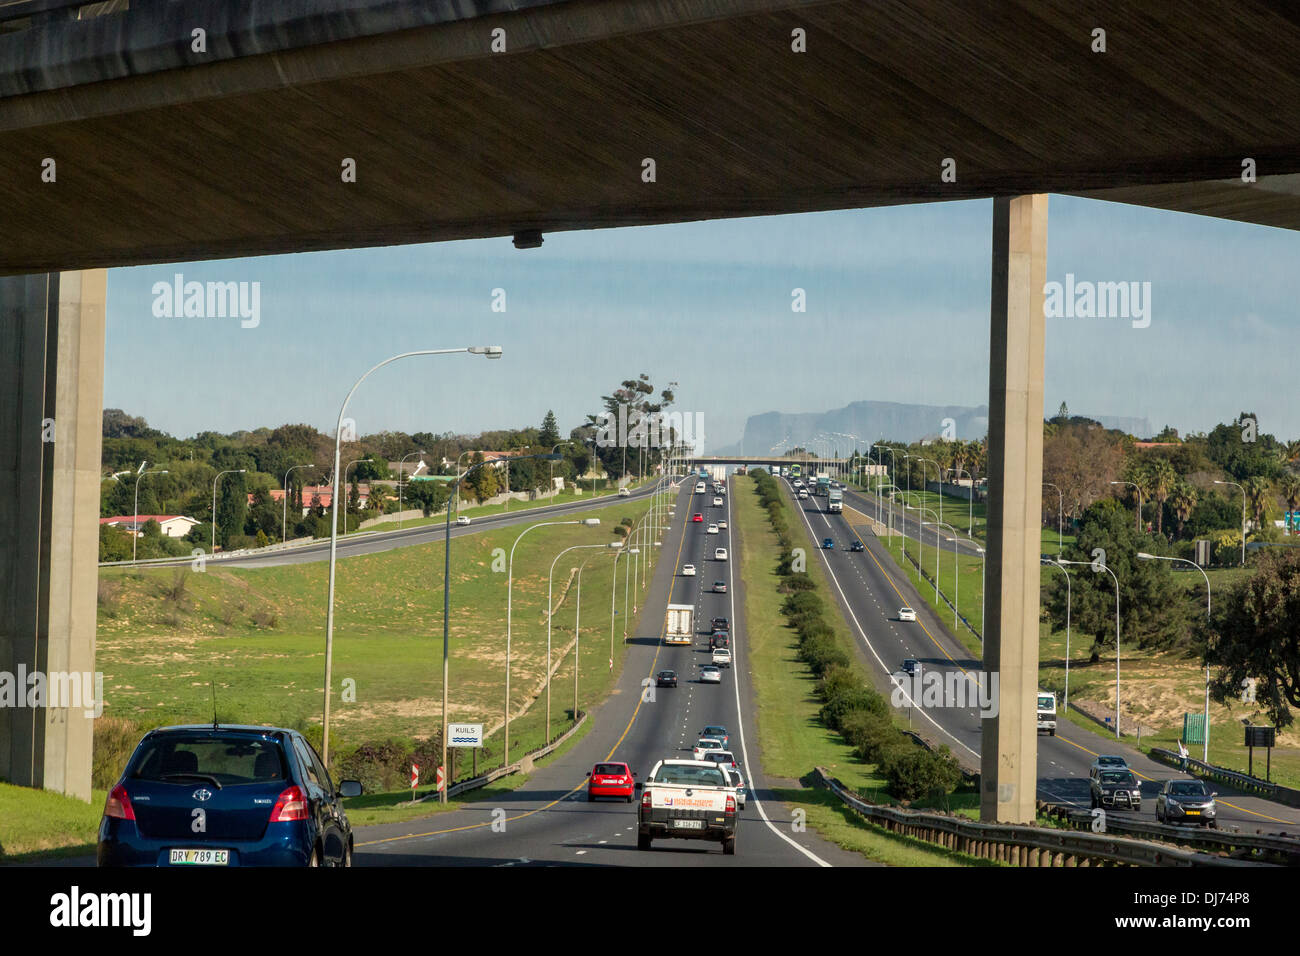 Südafrika, Cape Town. Autobahn in Richtung Kapstadt. Fahren auf der linken Seite. Tafelberg in der Ferne. Stockfoto